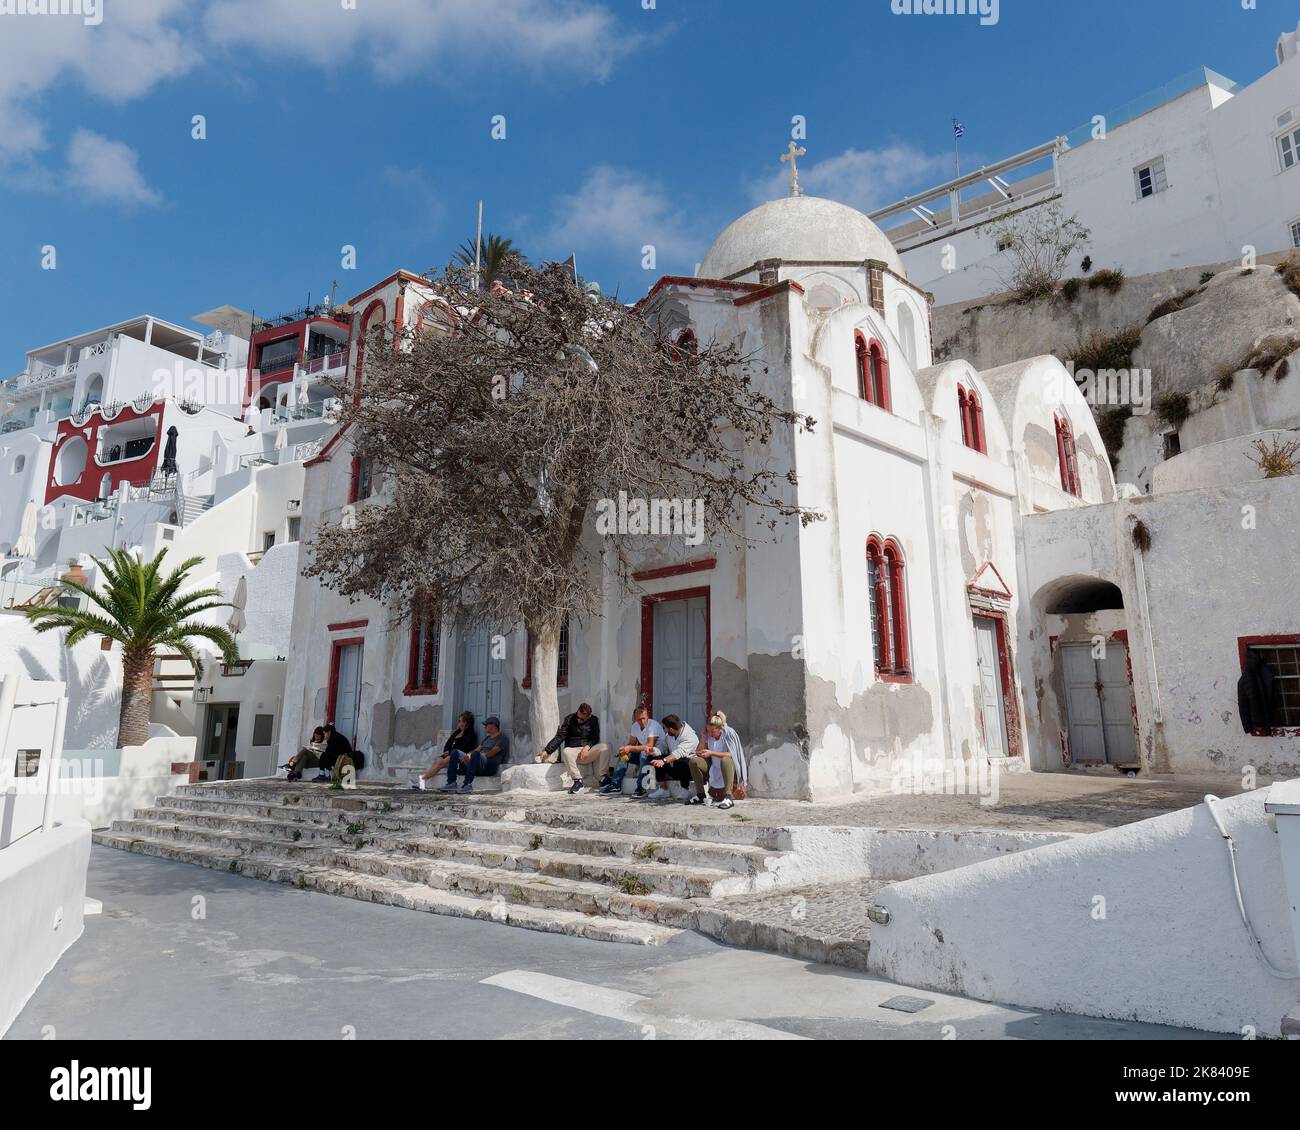 La gente siede accanto ad una chiesa nella città di Fira, isola greca delle Cicladi di Santorini nel Mar Egeo Foto Stock